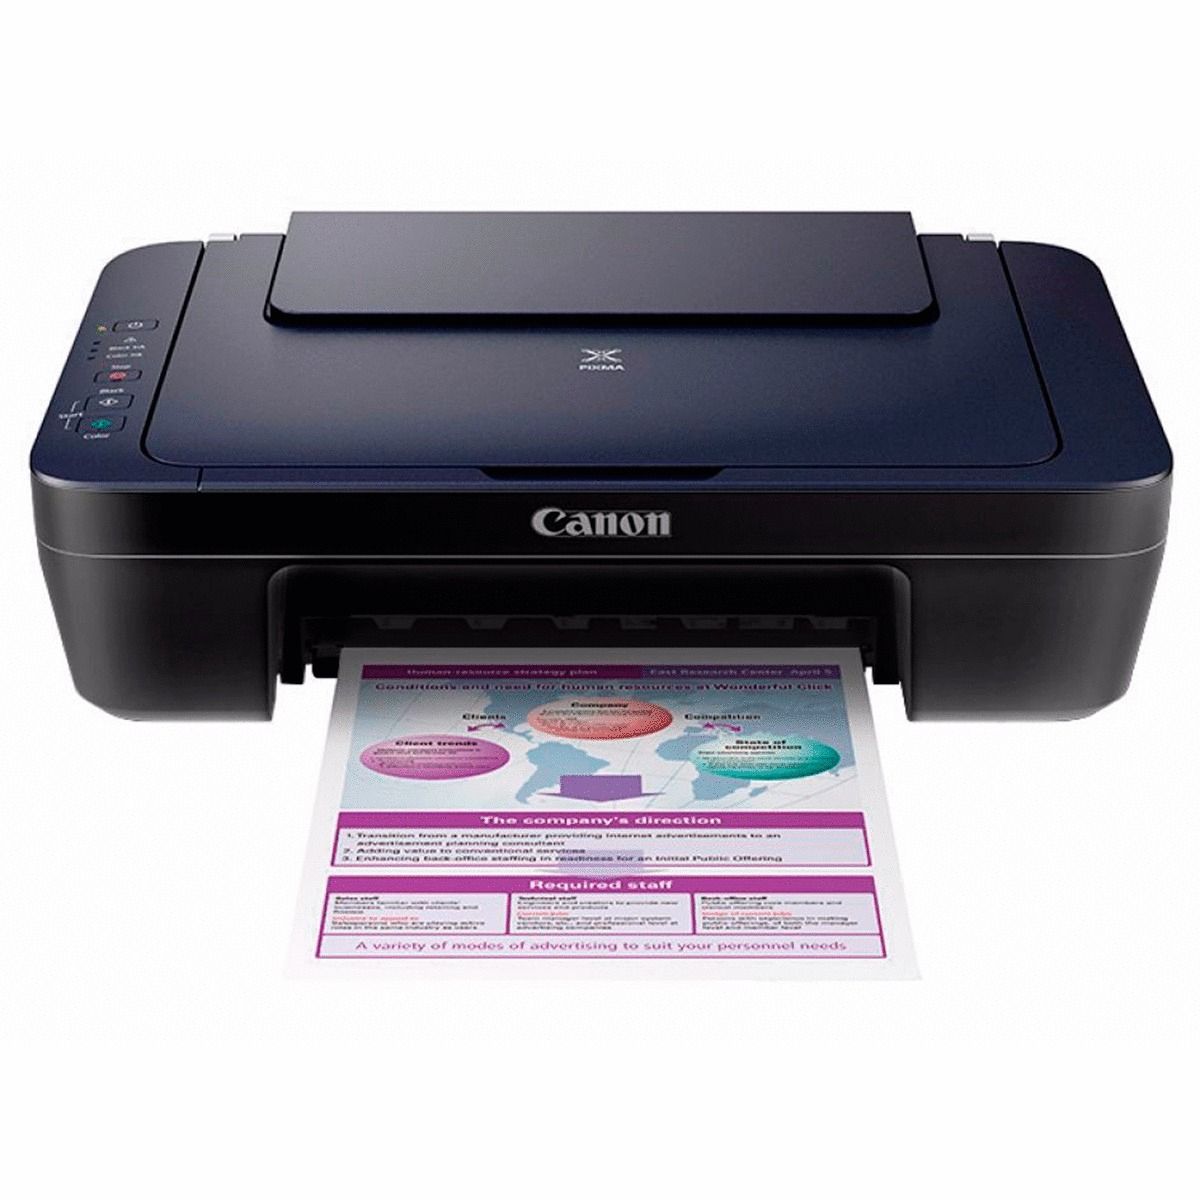 Impresora multifuncional Canon E402 imprime, escanea y copia, conexión USB